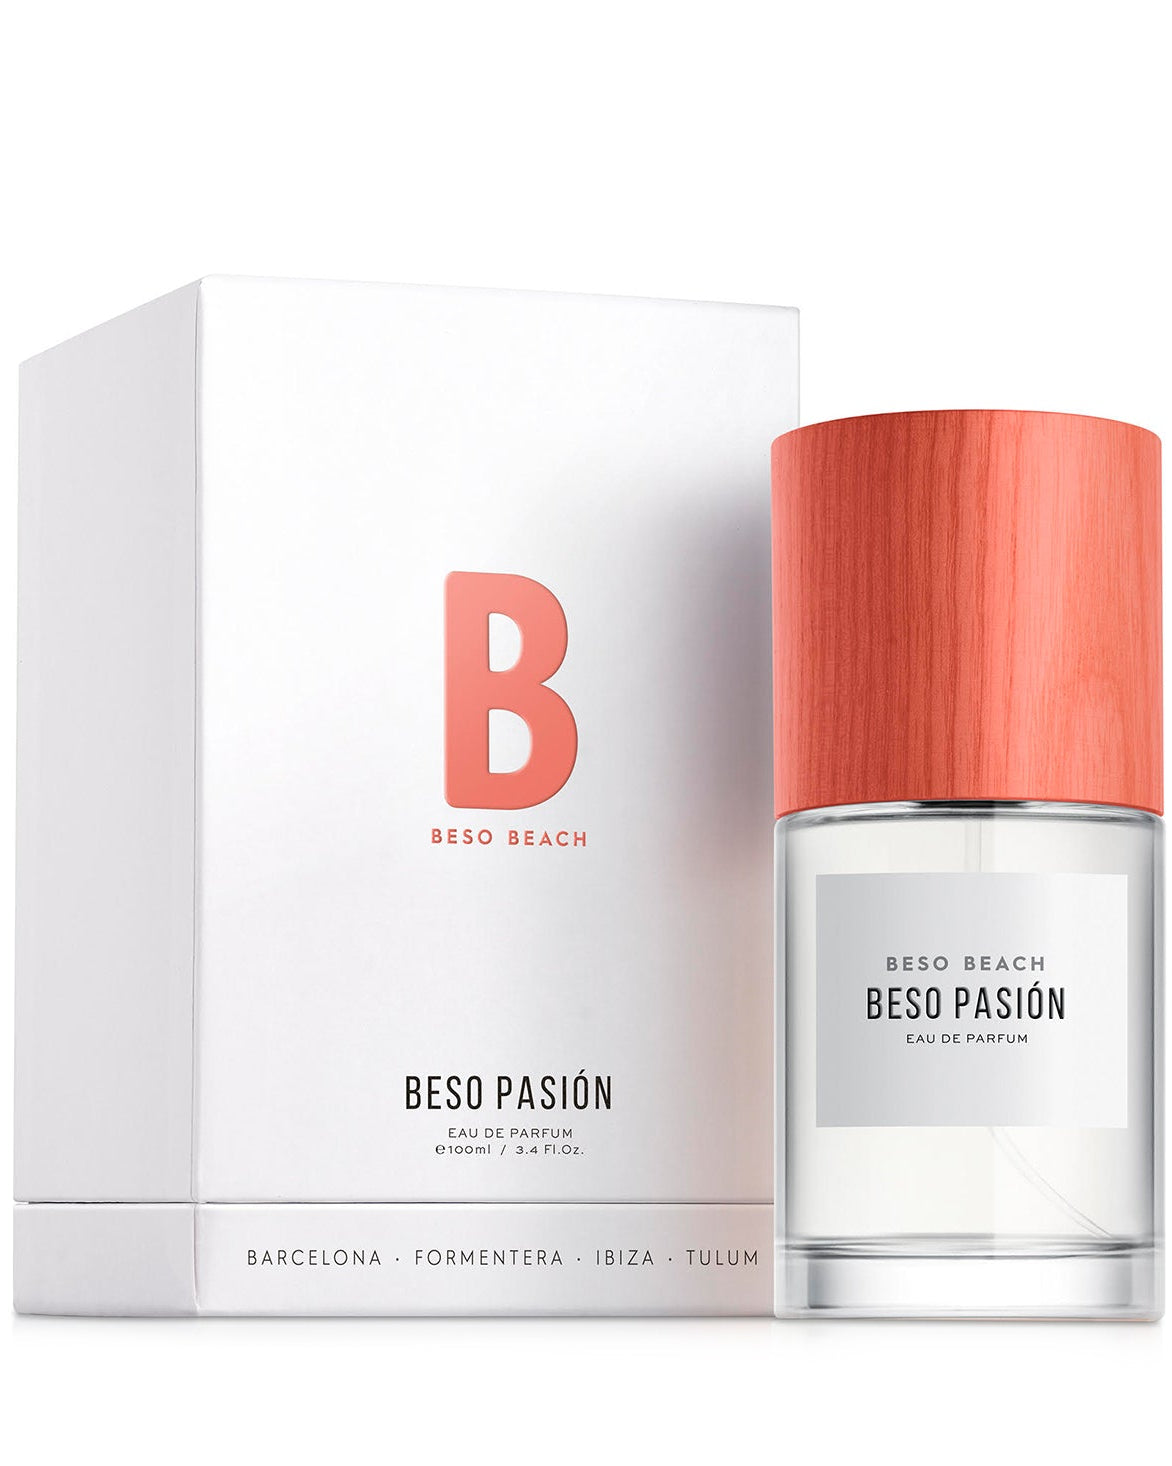 Beso Pasion Eau de Parfum - Men's Fragrance at Menzclub